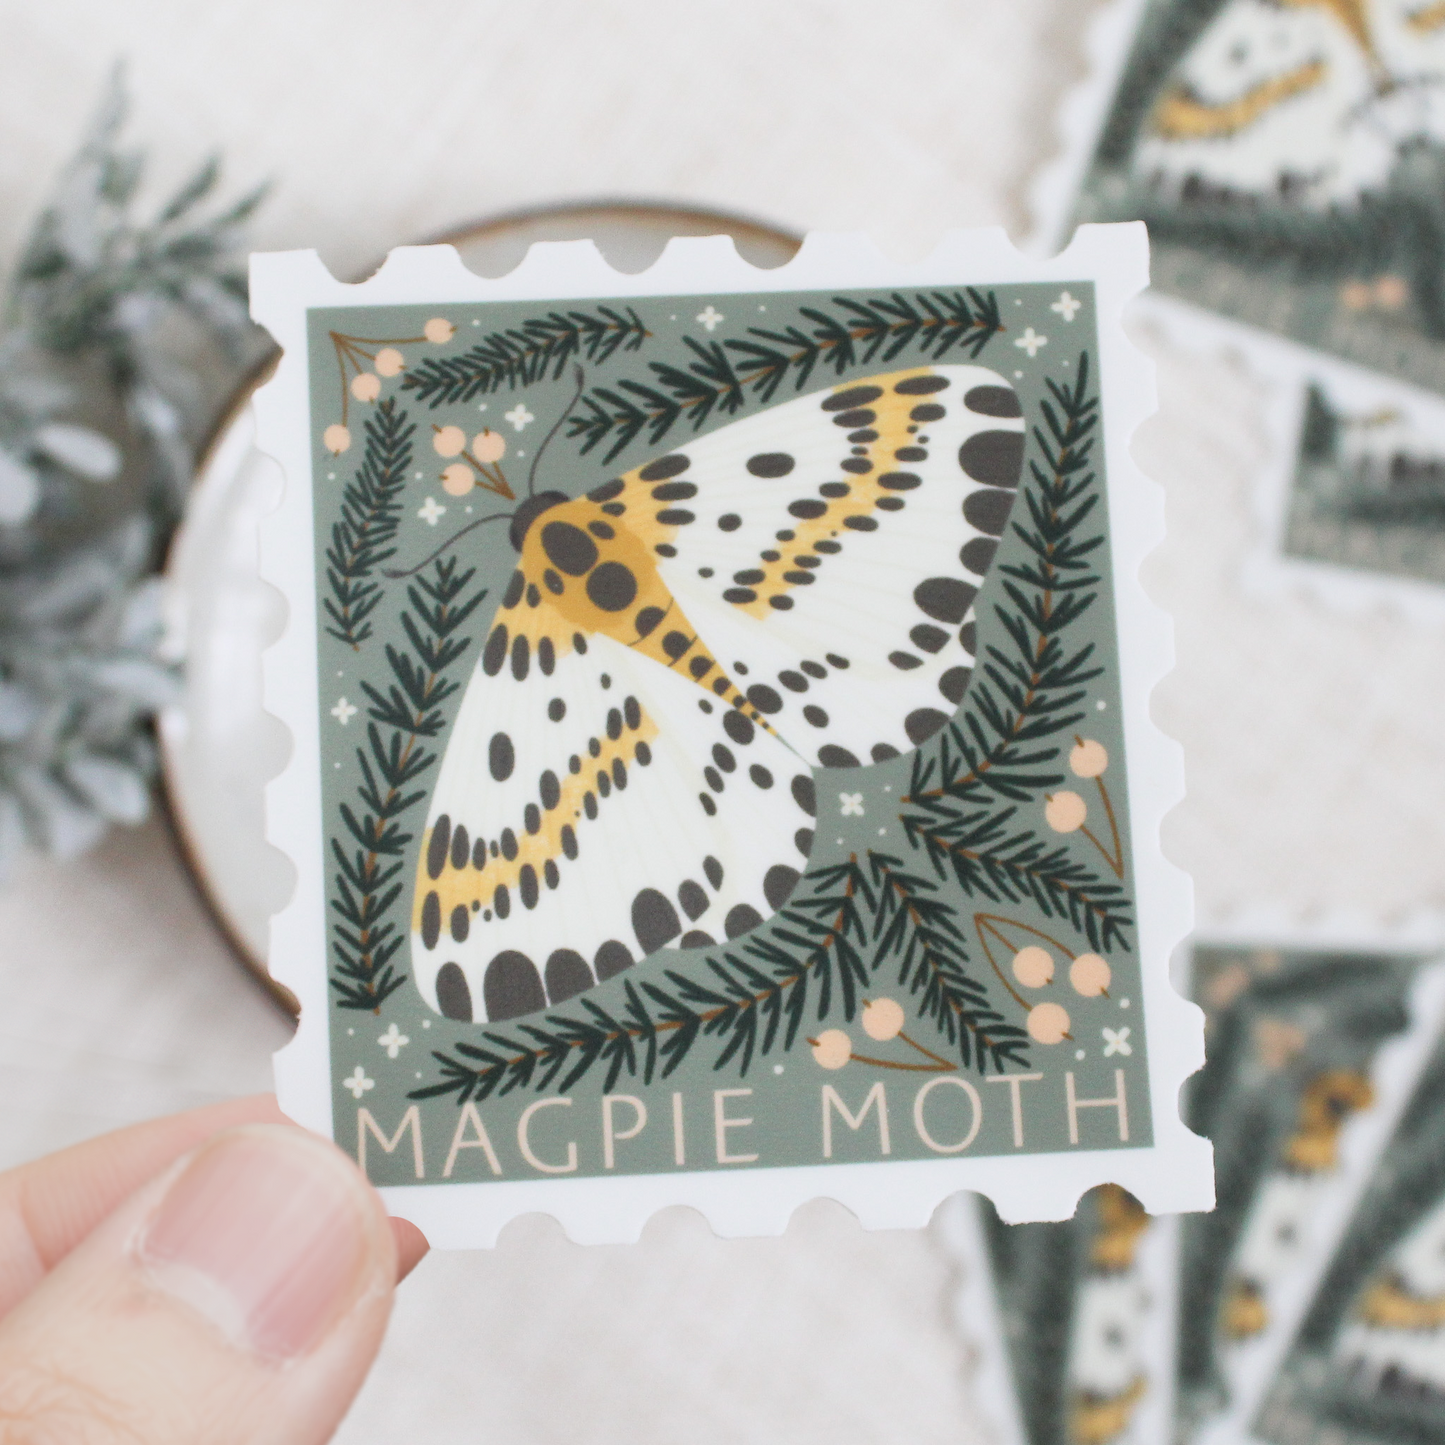 Magpie moth, stamp shaped vinyl sticker